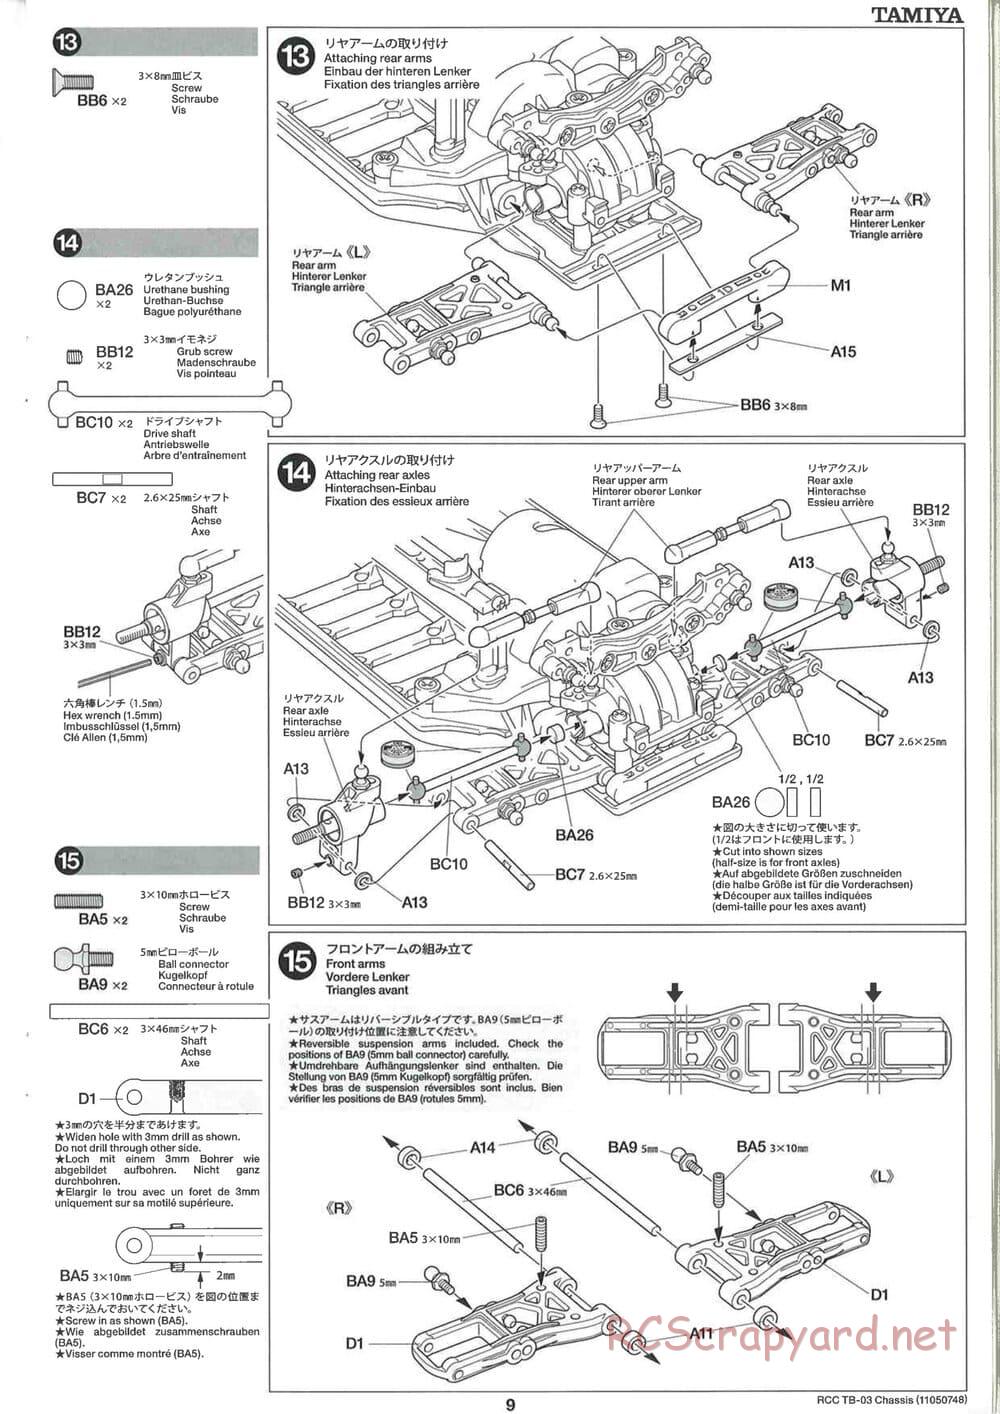 Tamiya - TB-03 Chassis - Manual - Page 9